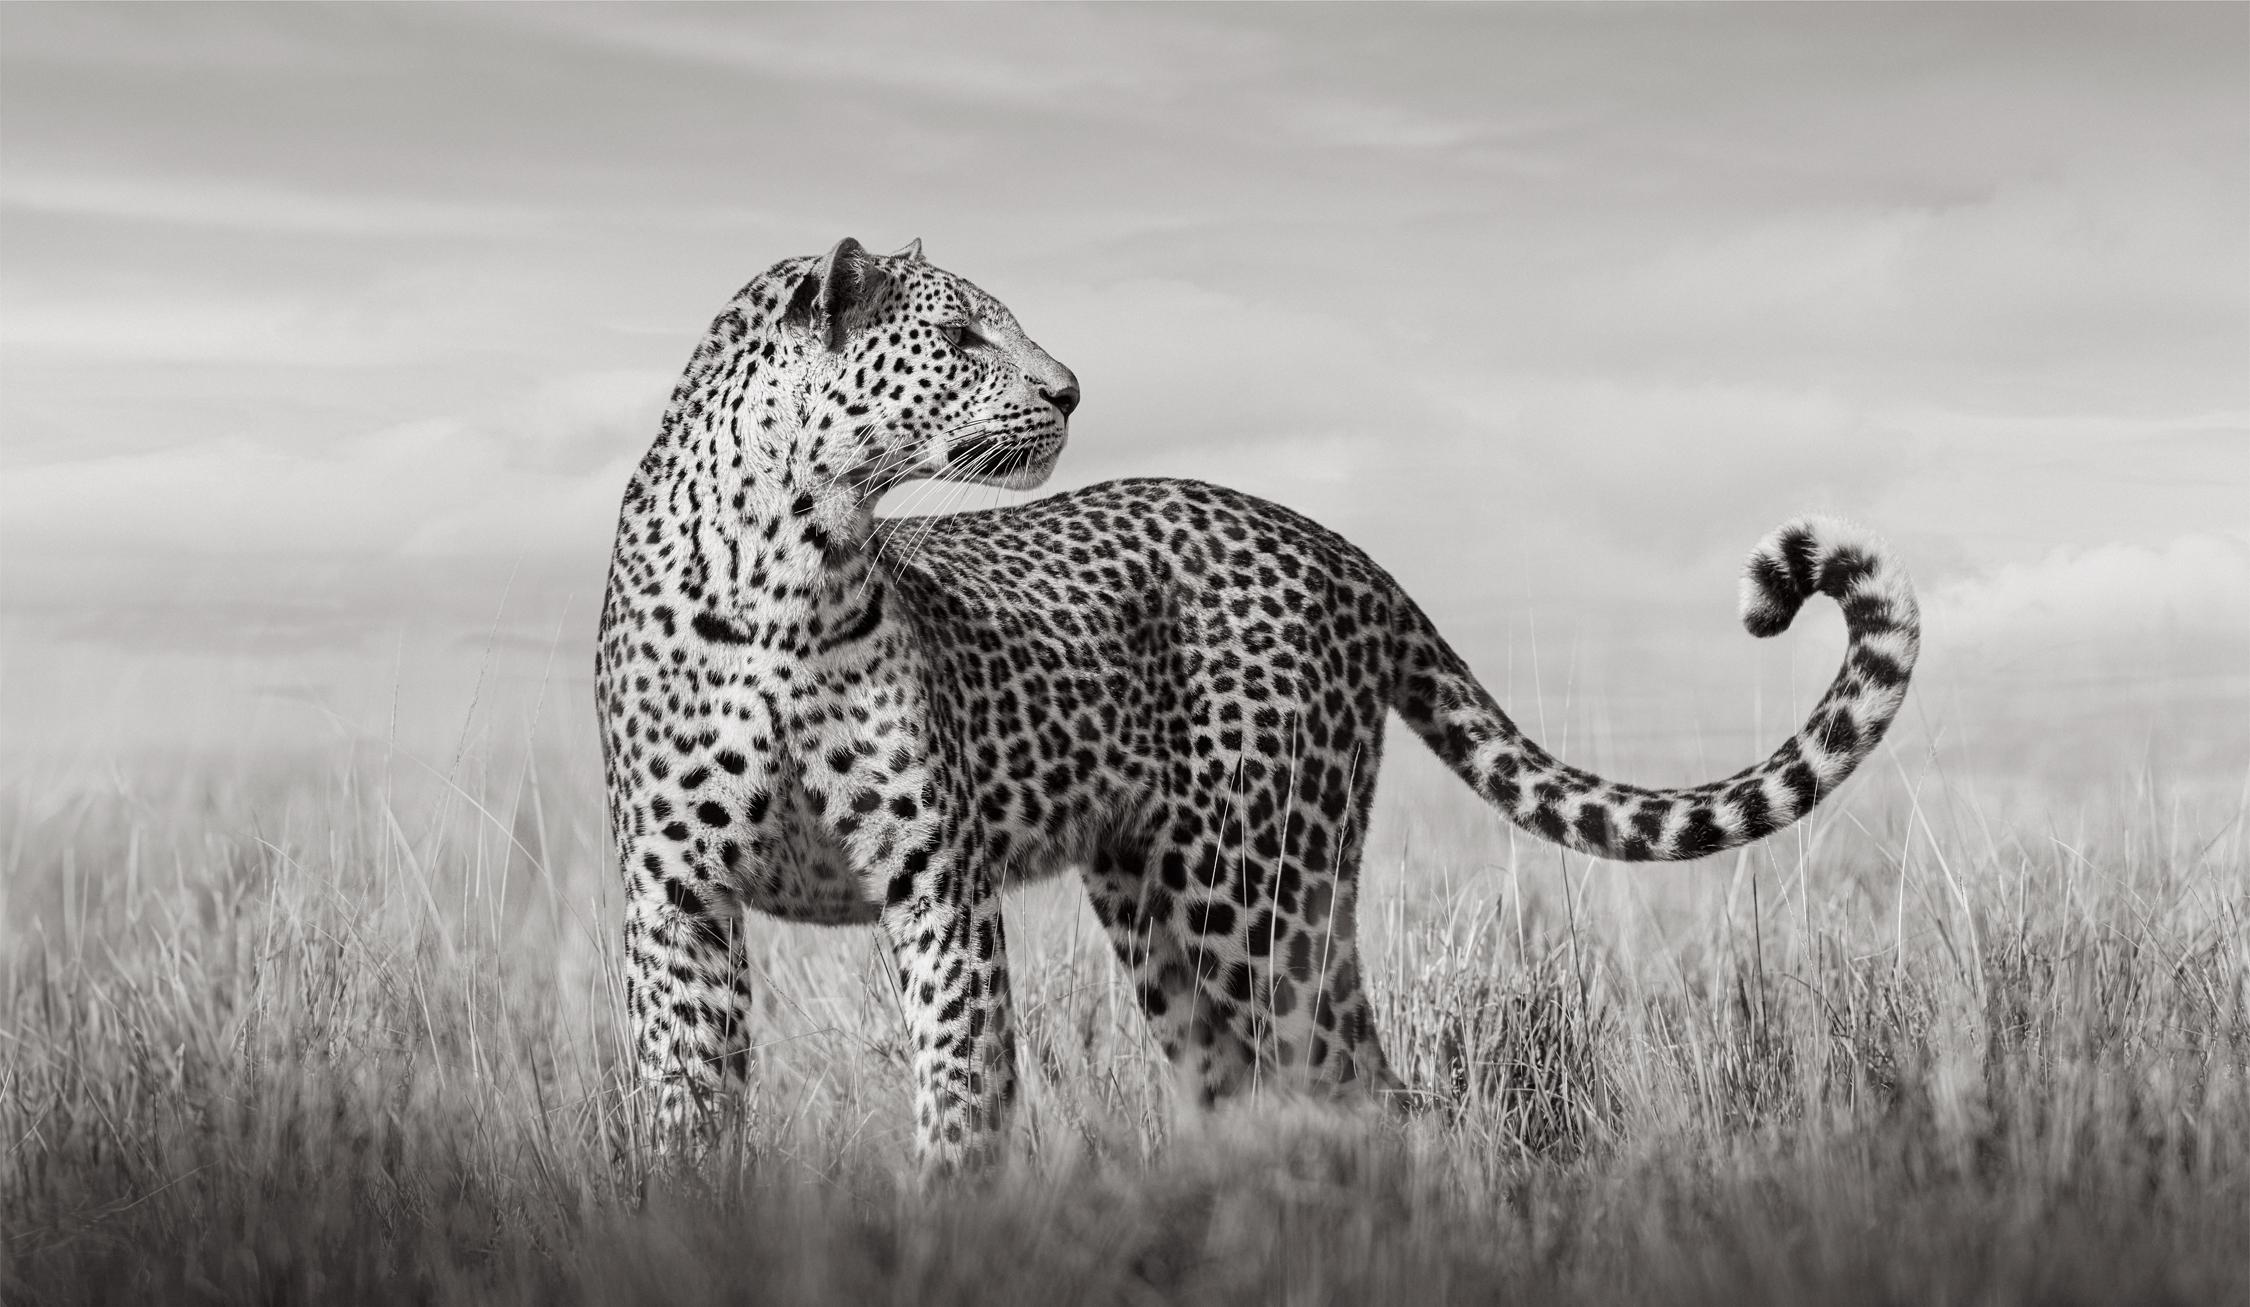 Un léopard du Kenya se tient debout dans la haute herbe du Kenya, regardant quelque chose hors de vue